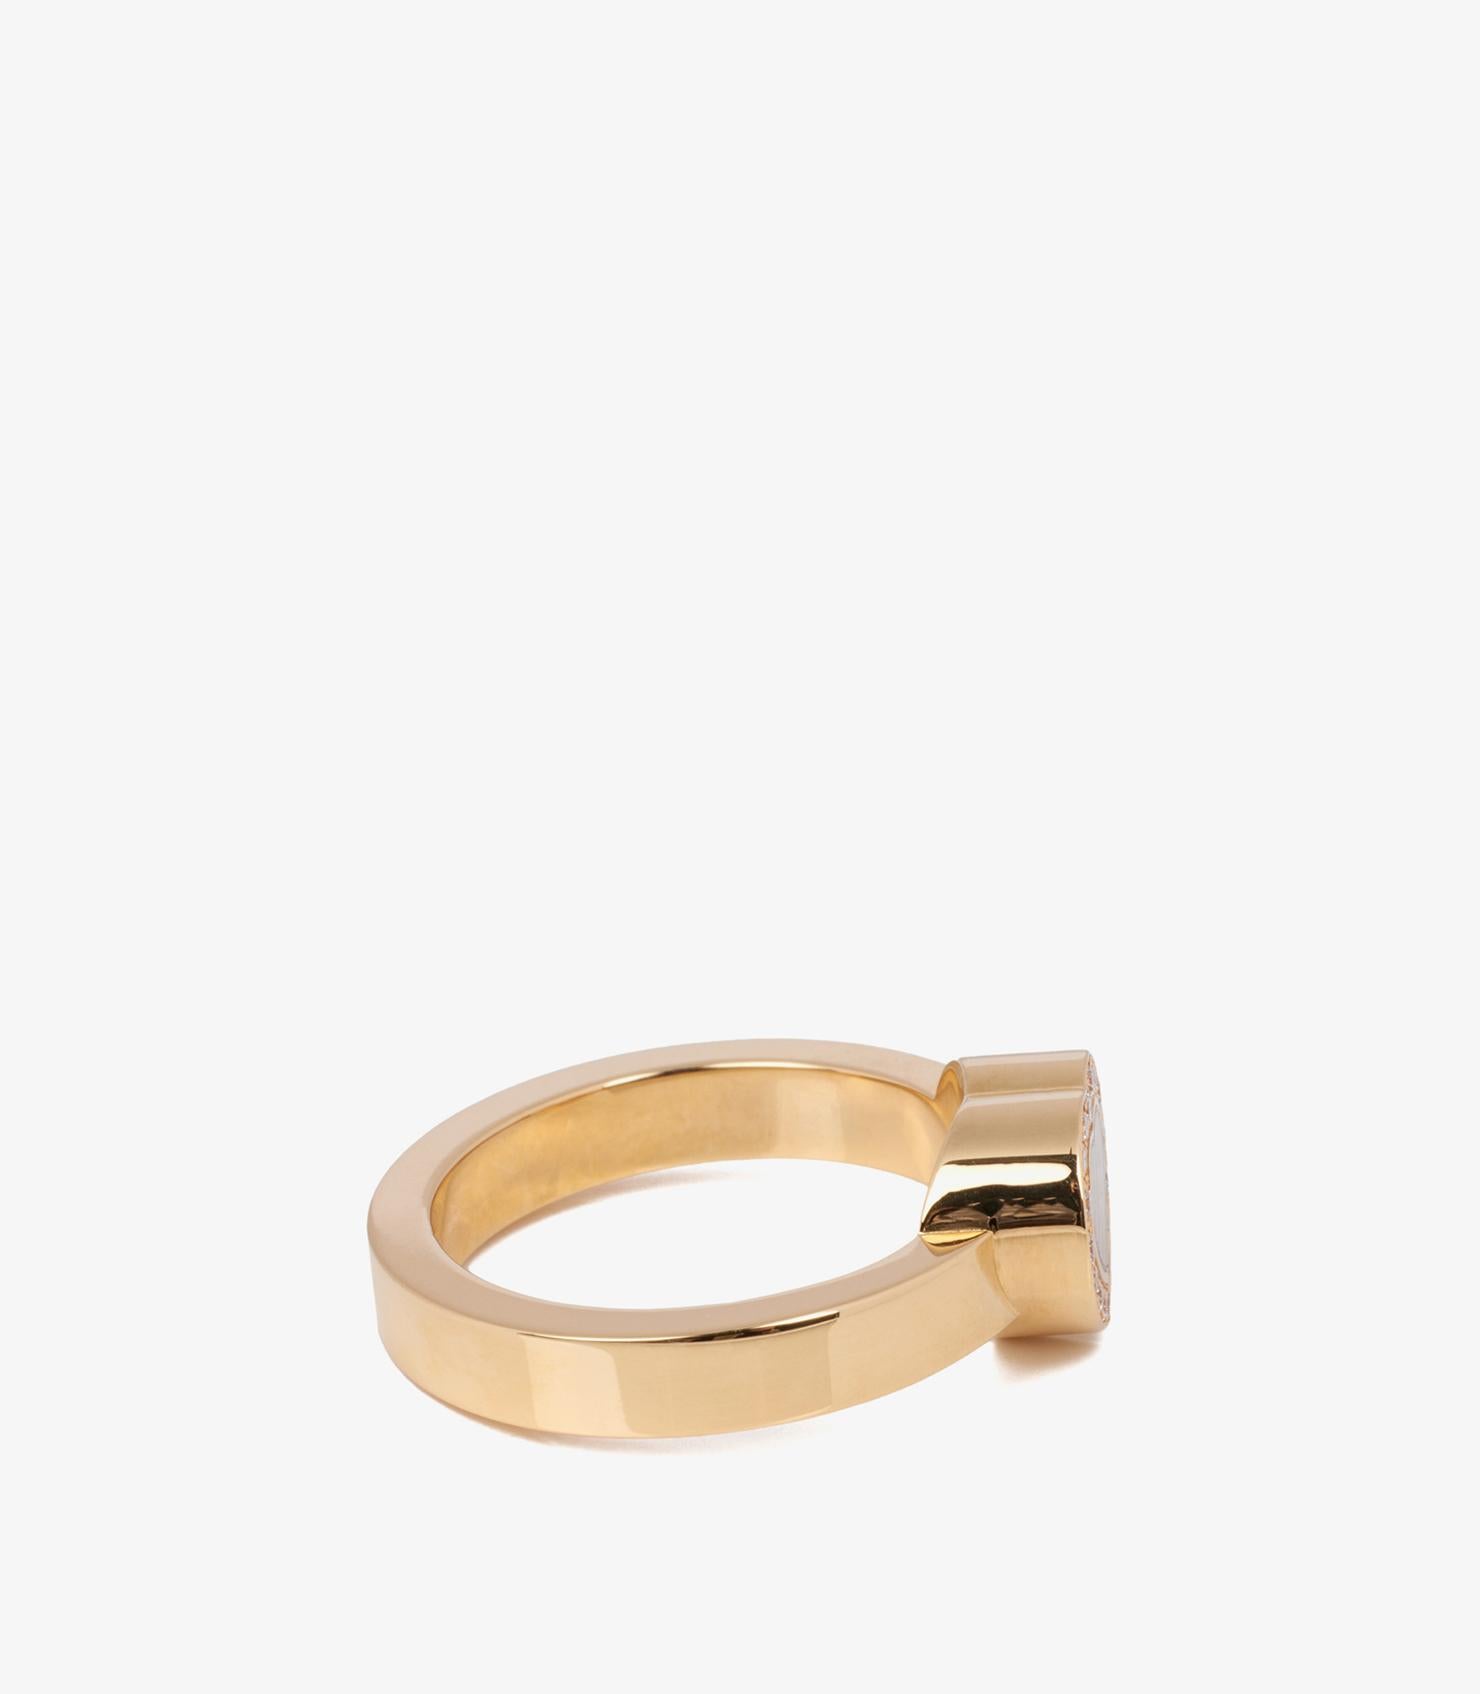 Chopard Diamant Set 18ct Gelbgold Herz Design Happy Diamonds Ring

Marke- Chopard
Modell- Happy Diamonds Ring
Produkttyp- Ring
Seriennummer - 2******
MATERIAL(e)- 18ct Gelbgold
Edelstein-Diamant
UK Ringgröße - K
EU-Ringgröße - 50
US-Ringgröße - 5